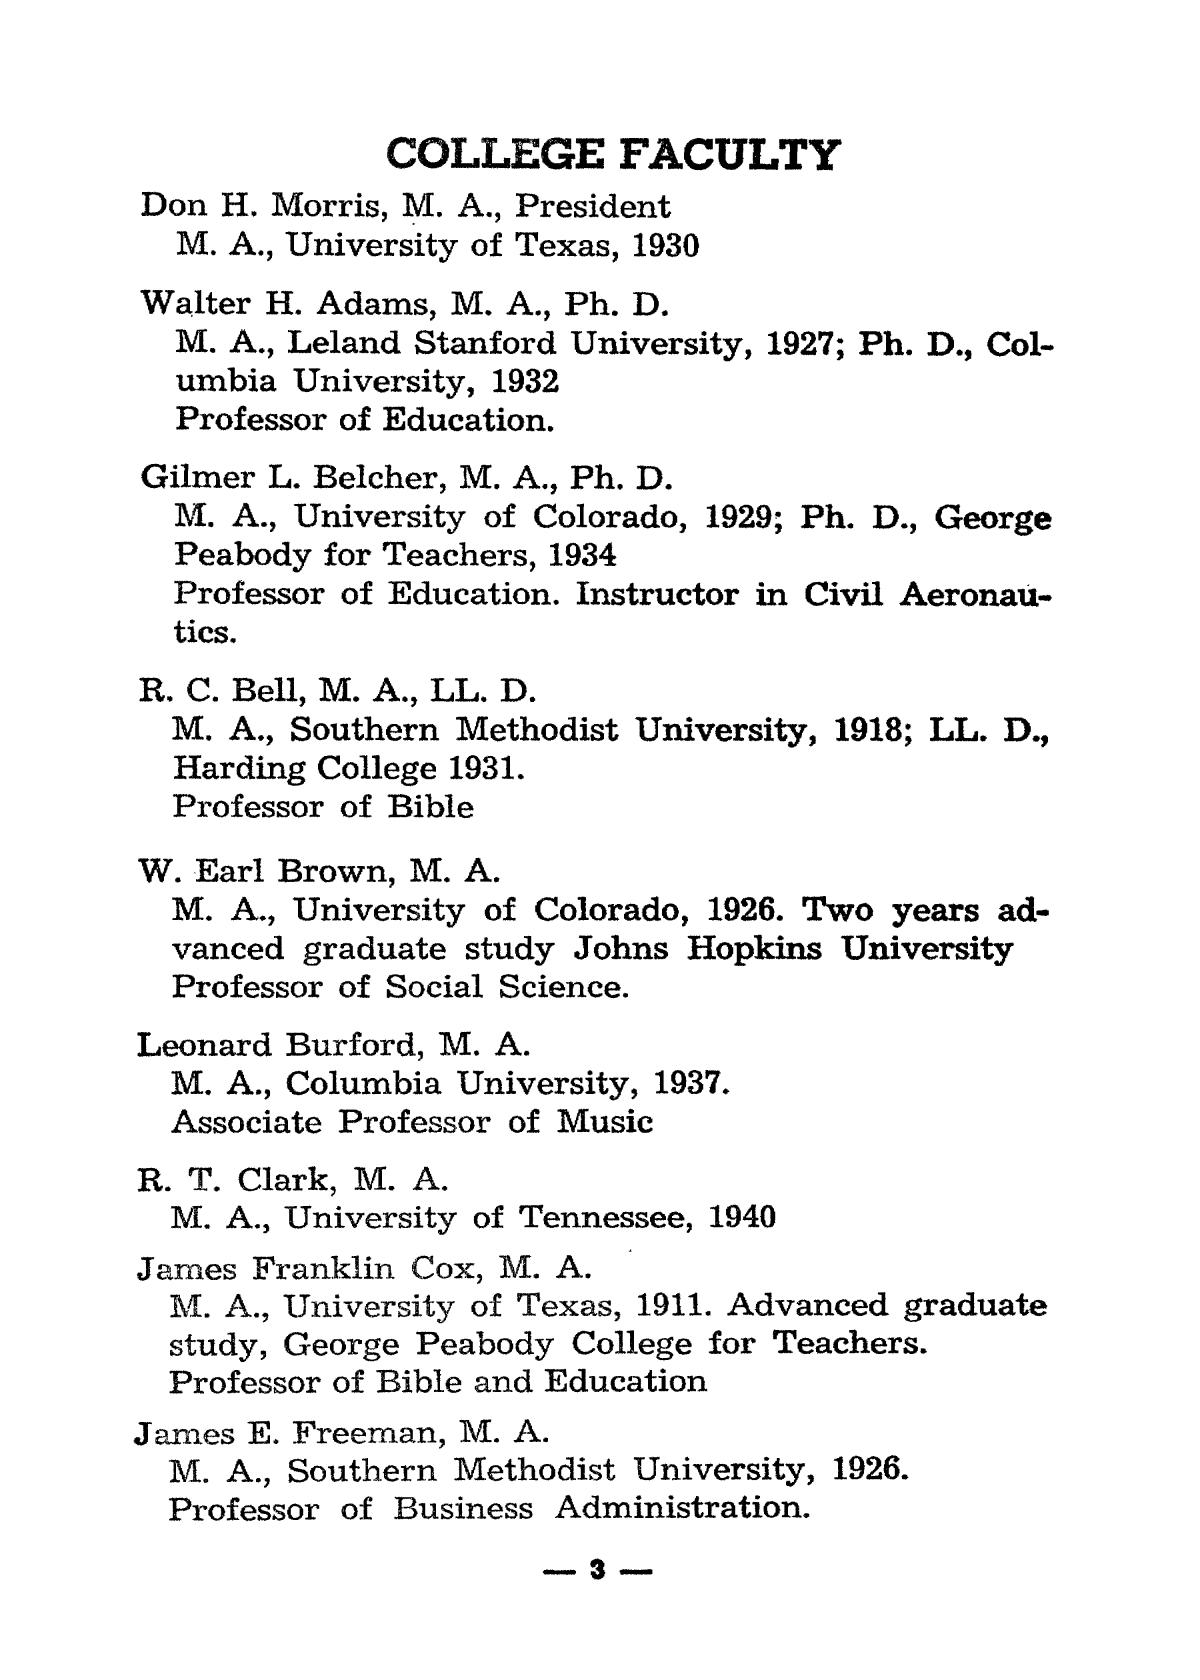 Catalog of Abilene Christian College, 1943
                                                
                                                    3
                                                